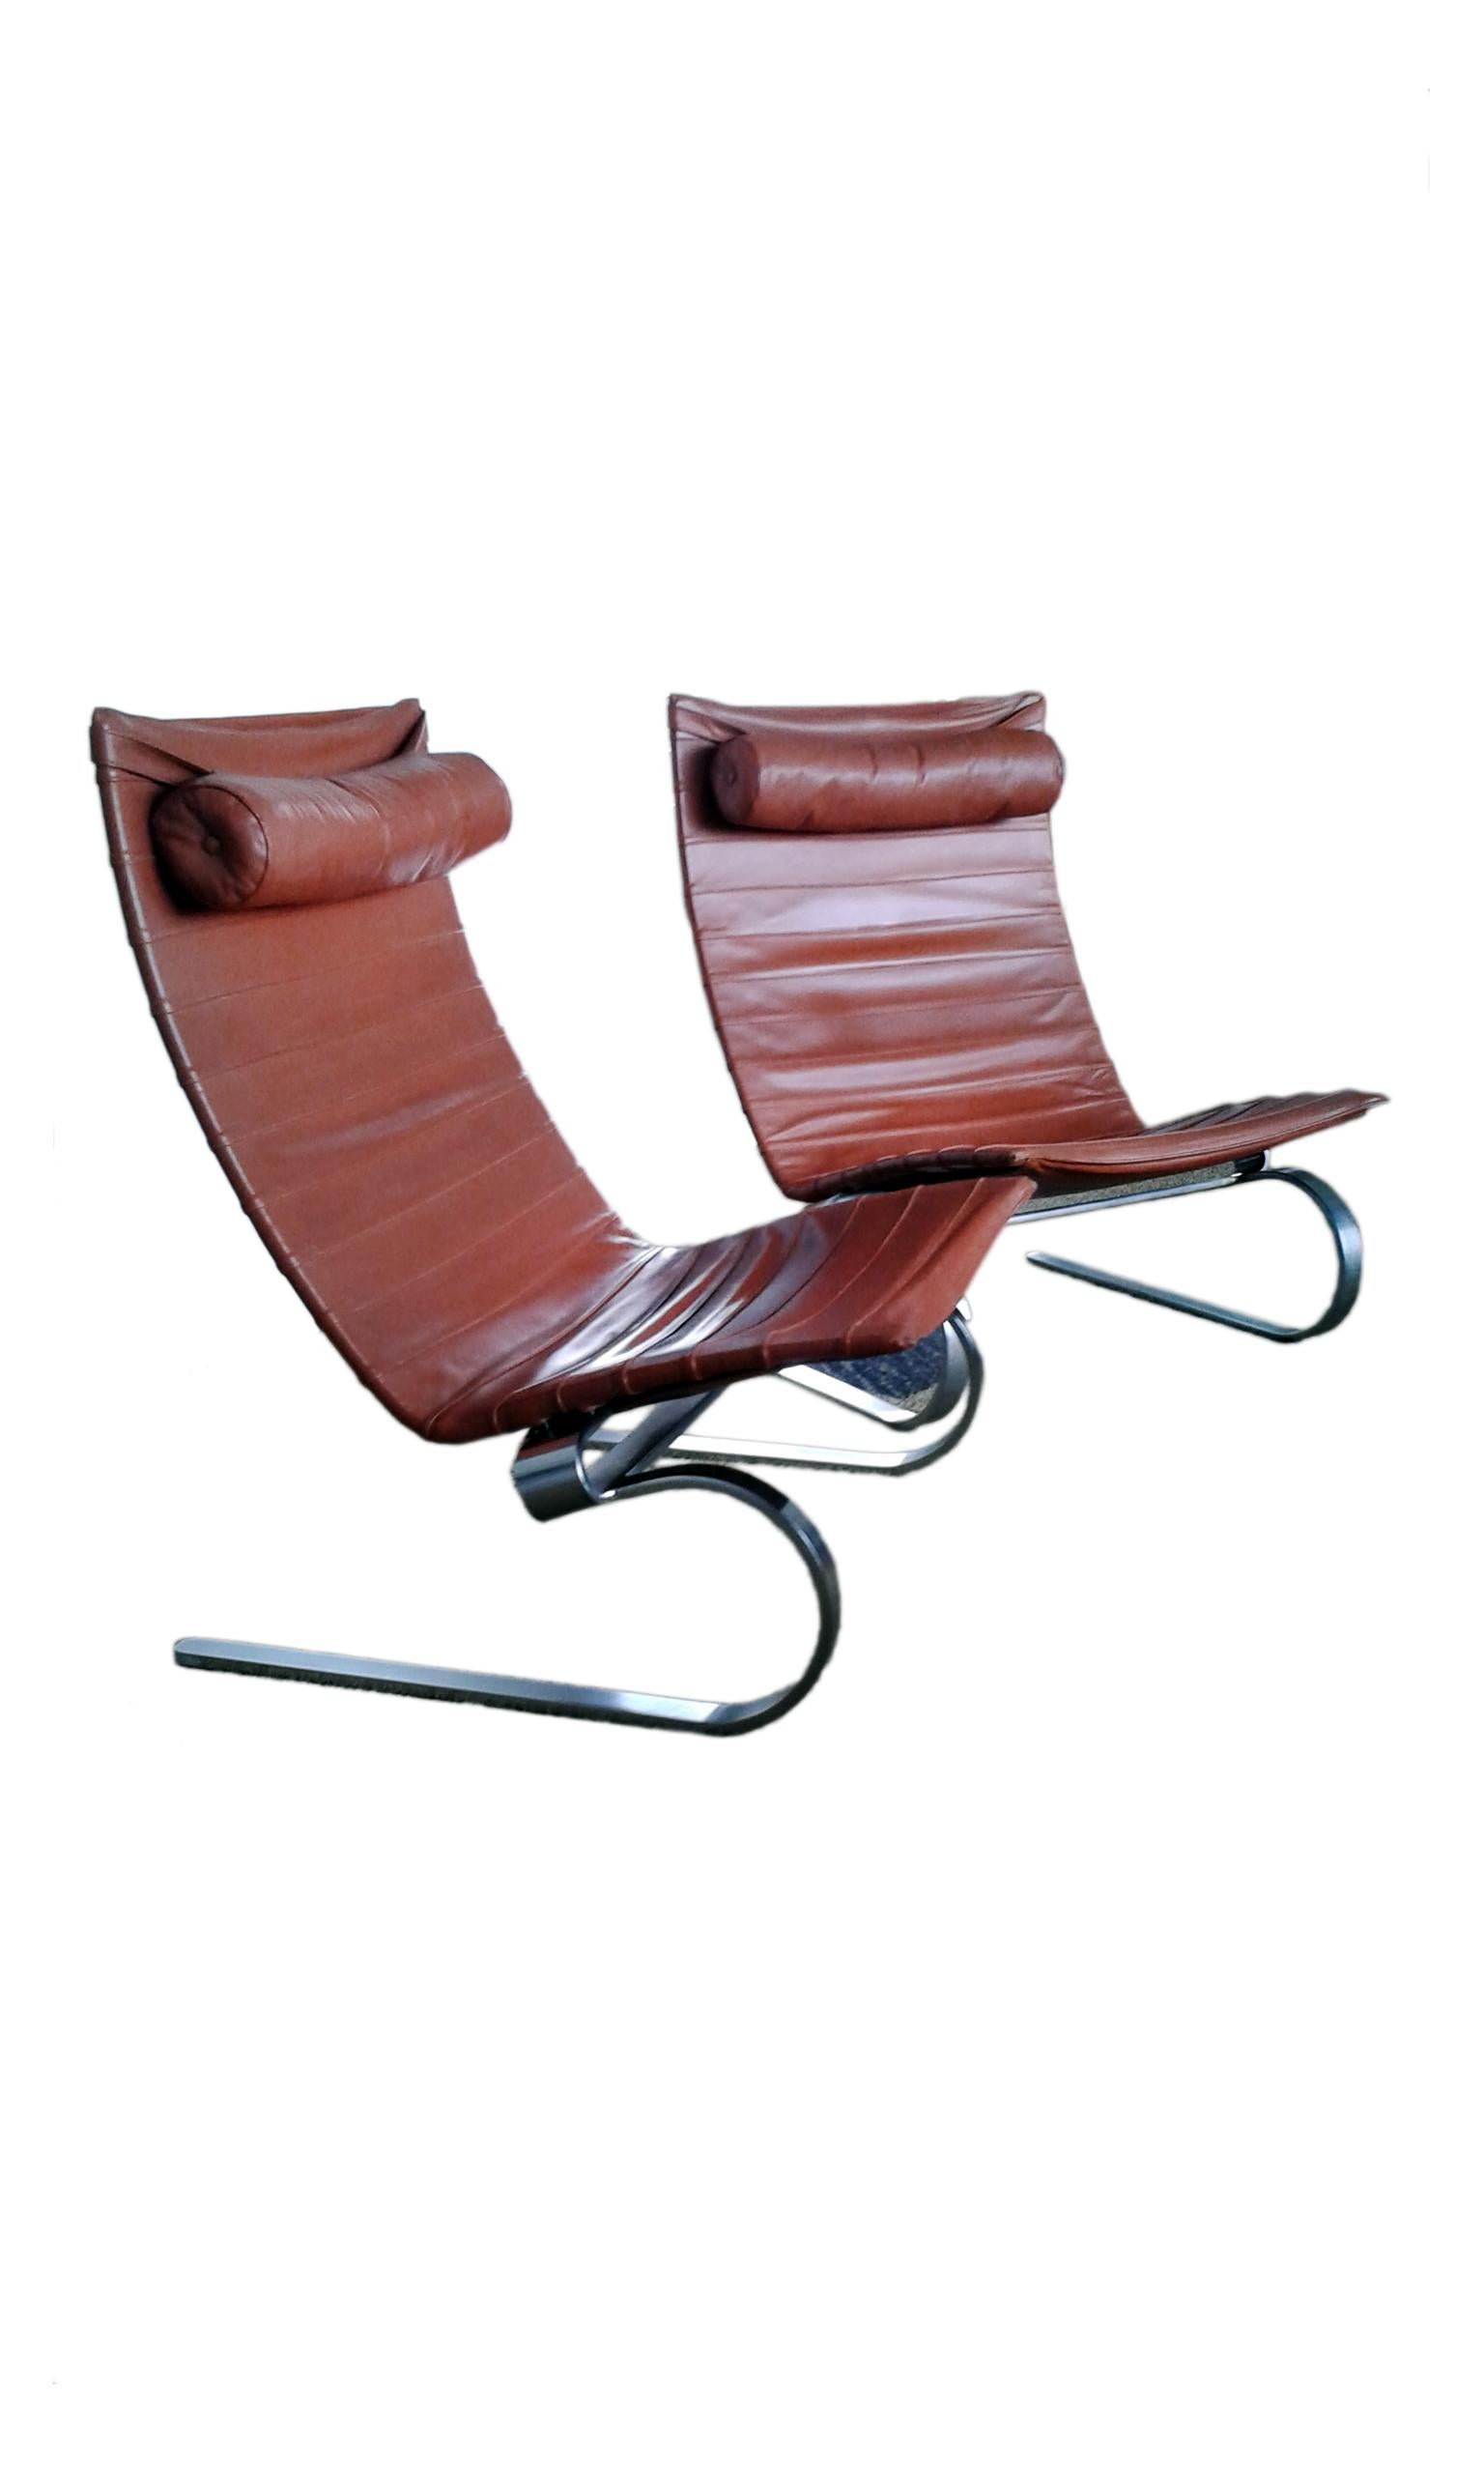 Scandinavian Modern Poul Kjaerholm Pair of PK20 Lounge Chair in Leather for E. Kold Christensen For Sale